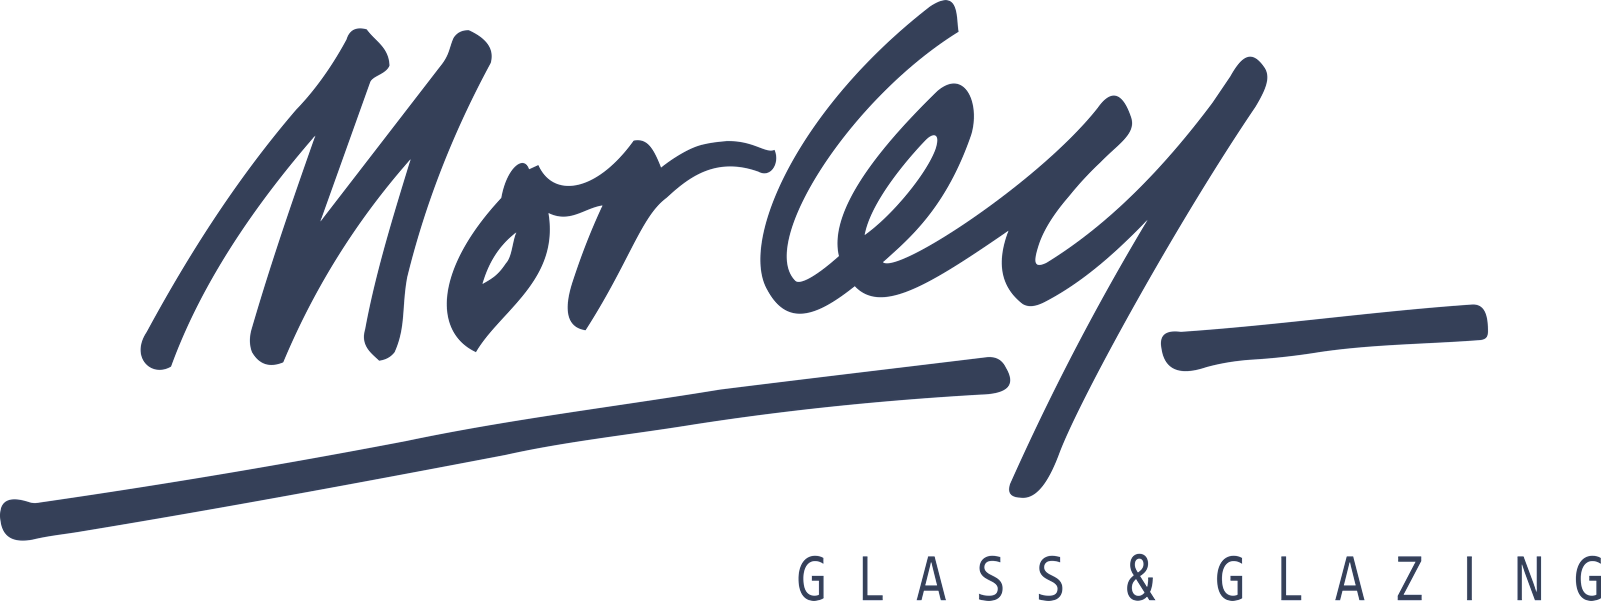 Morley Glass